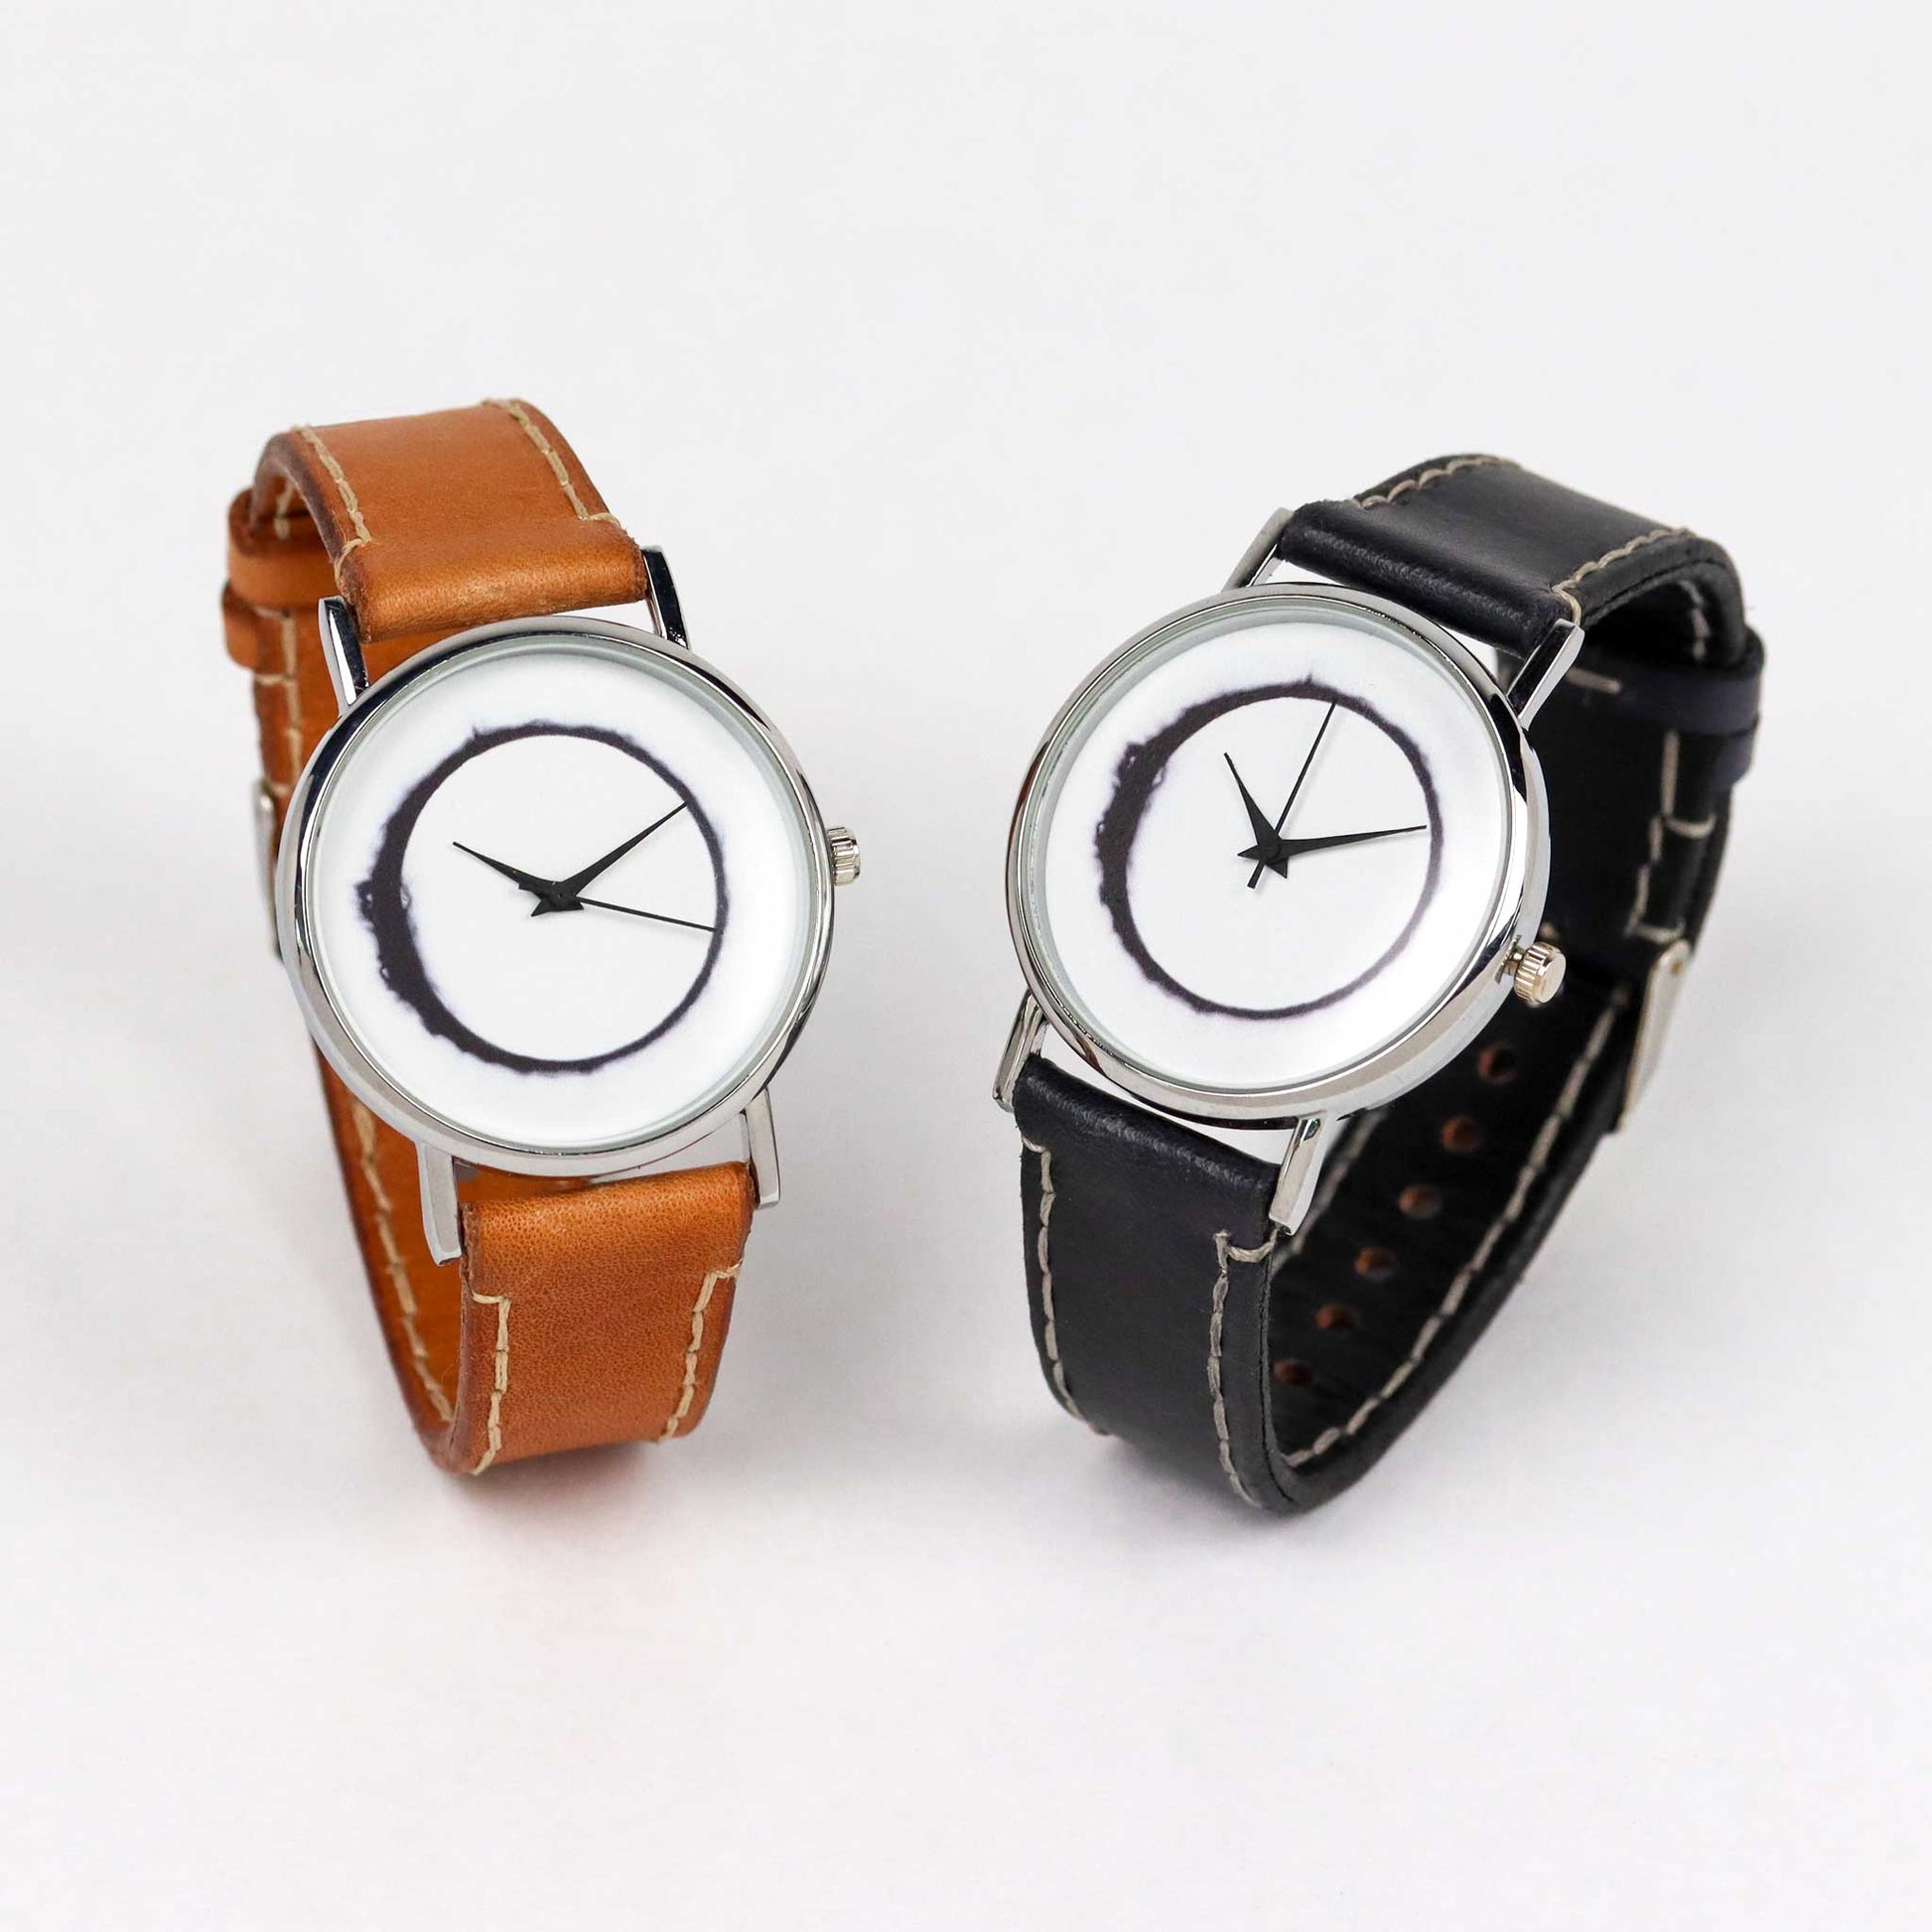 westworld inspired wrist watches